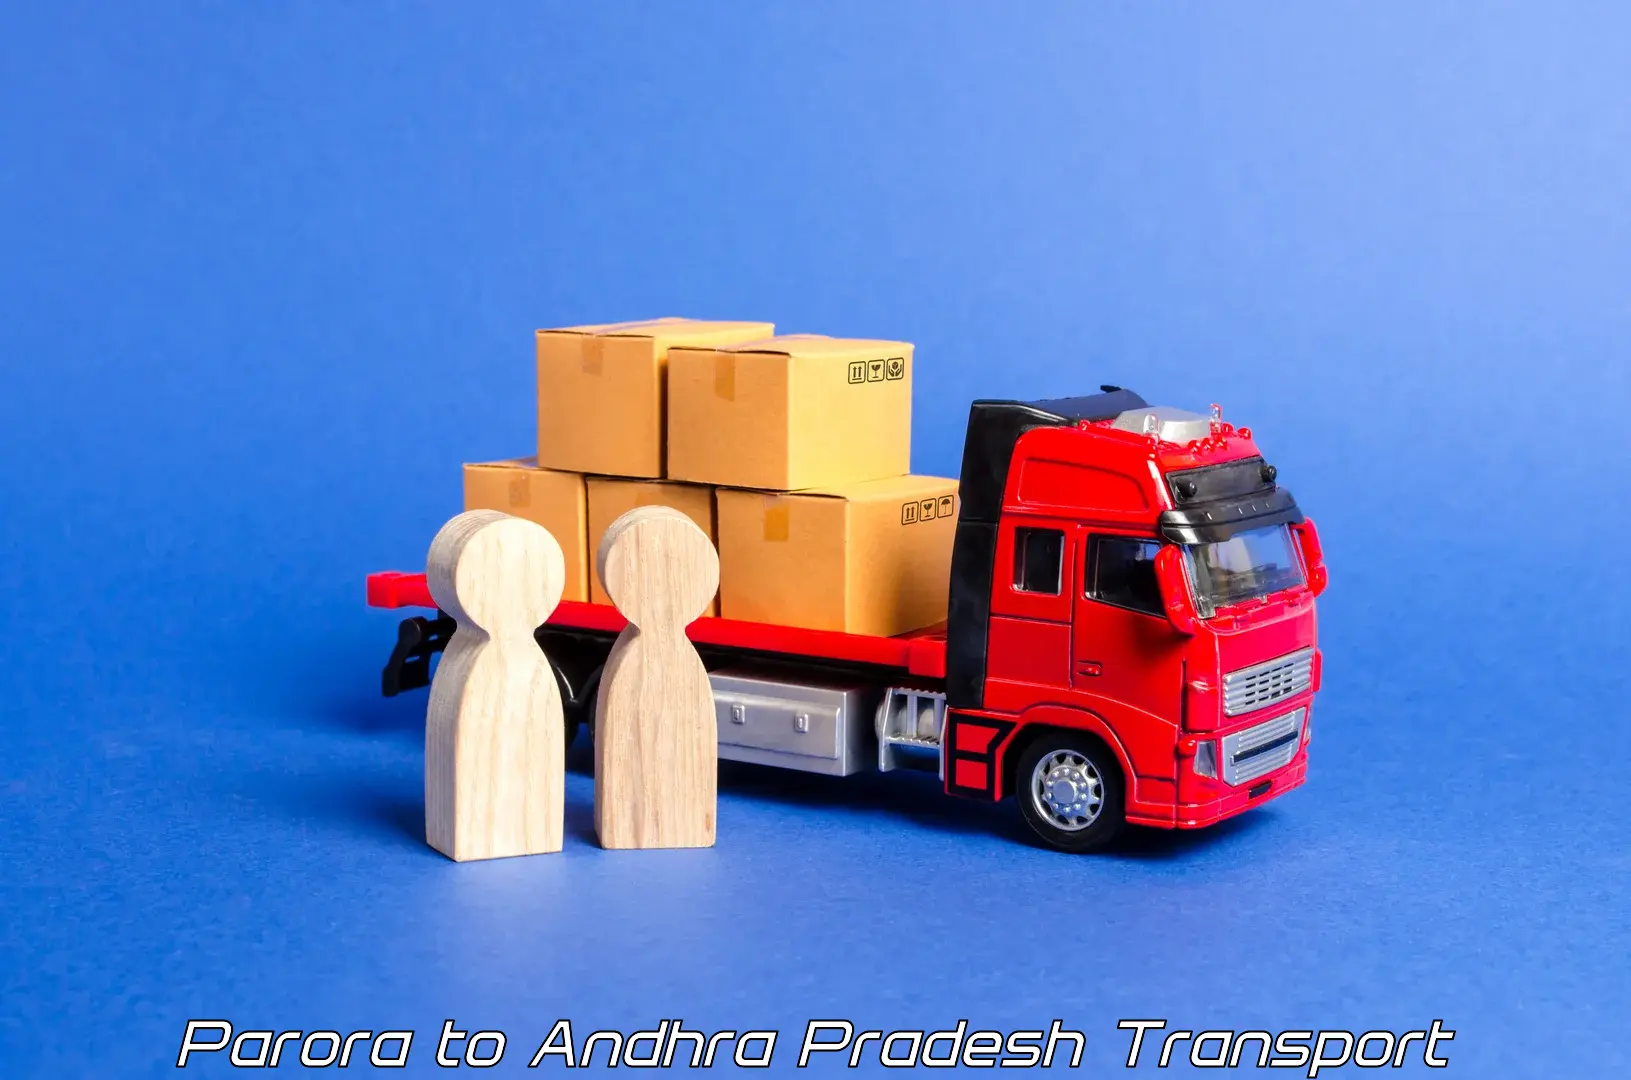 Transport in sharing Parora to Draksharamam